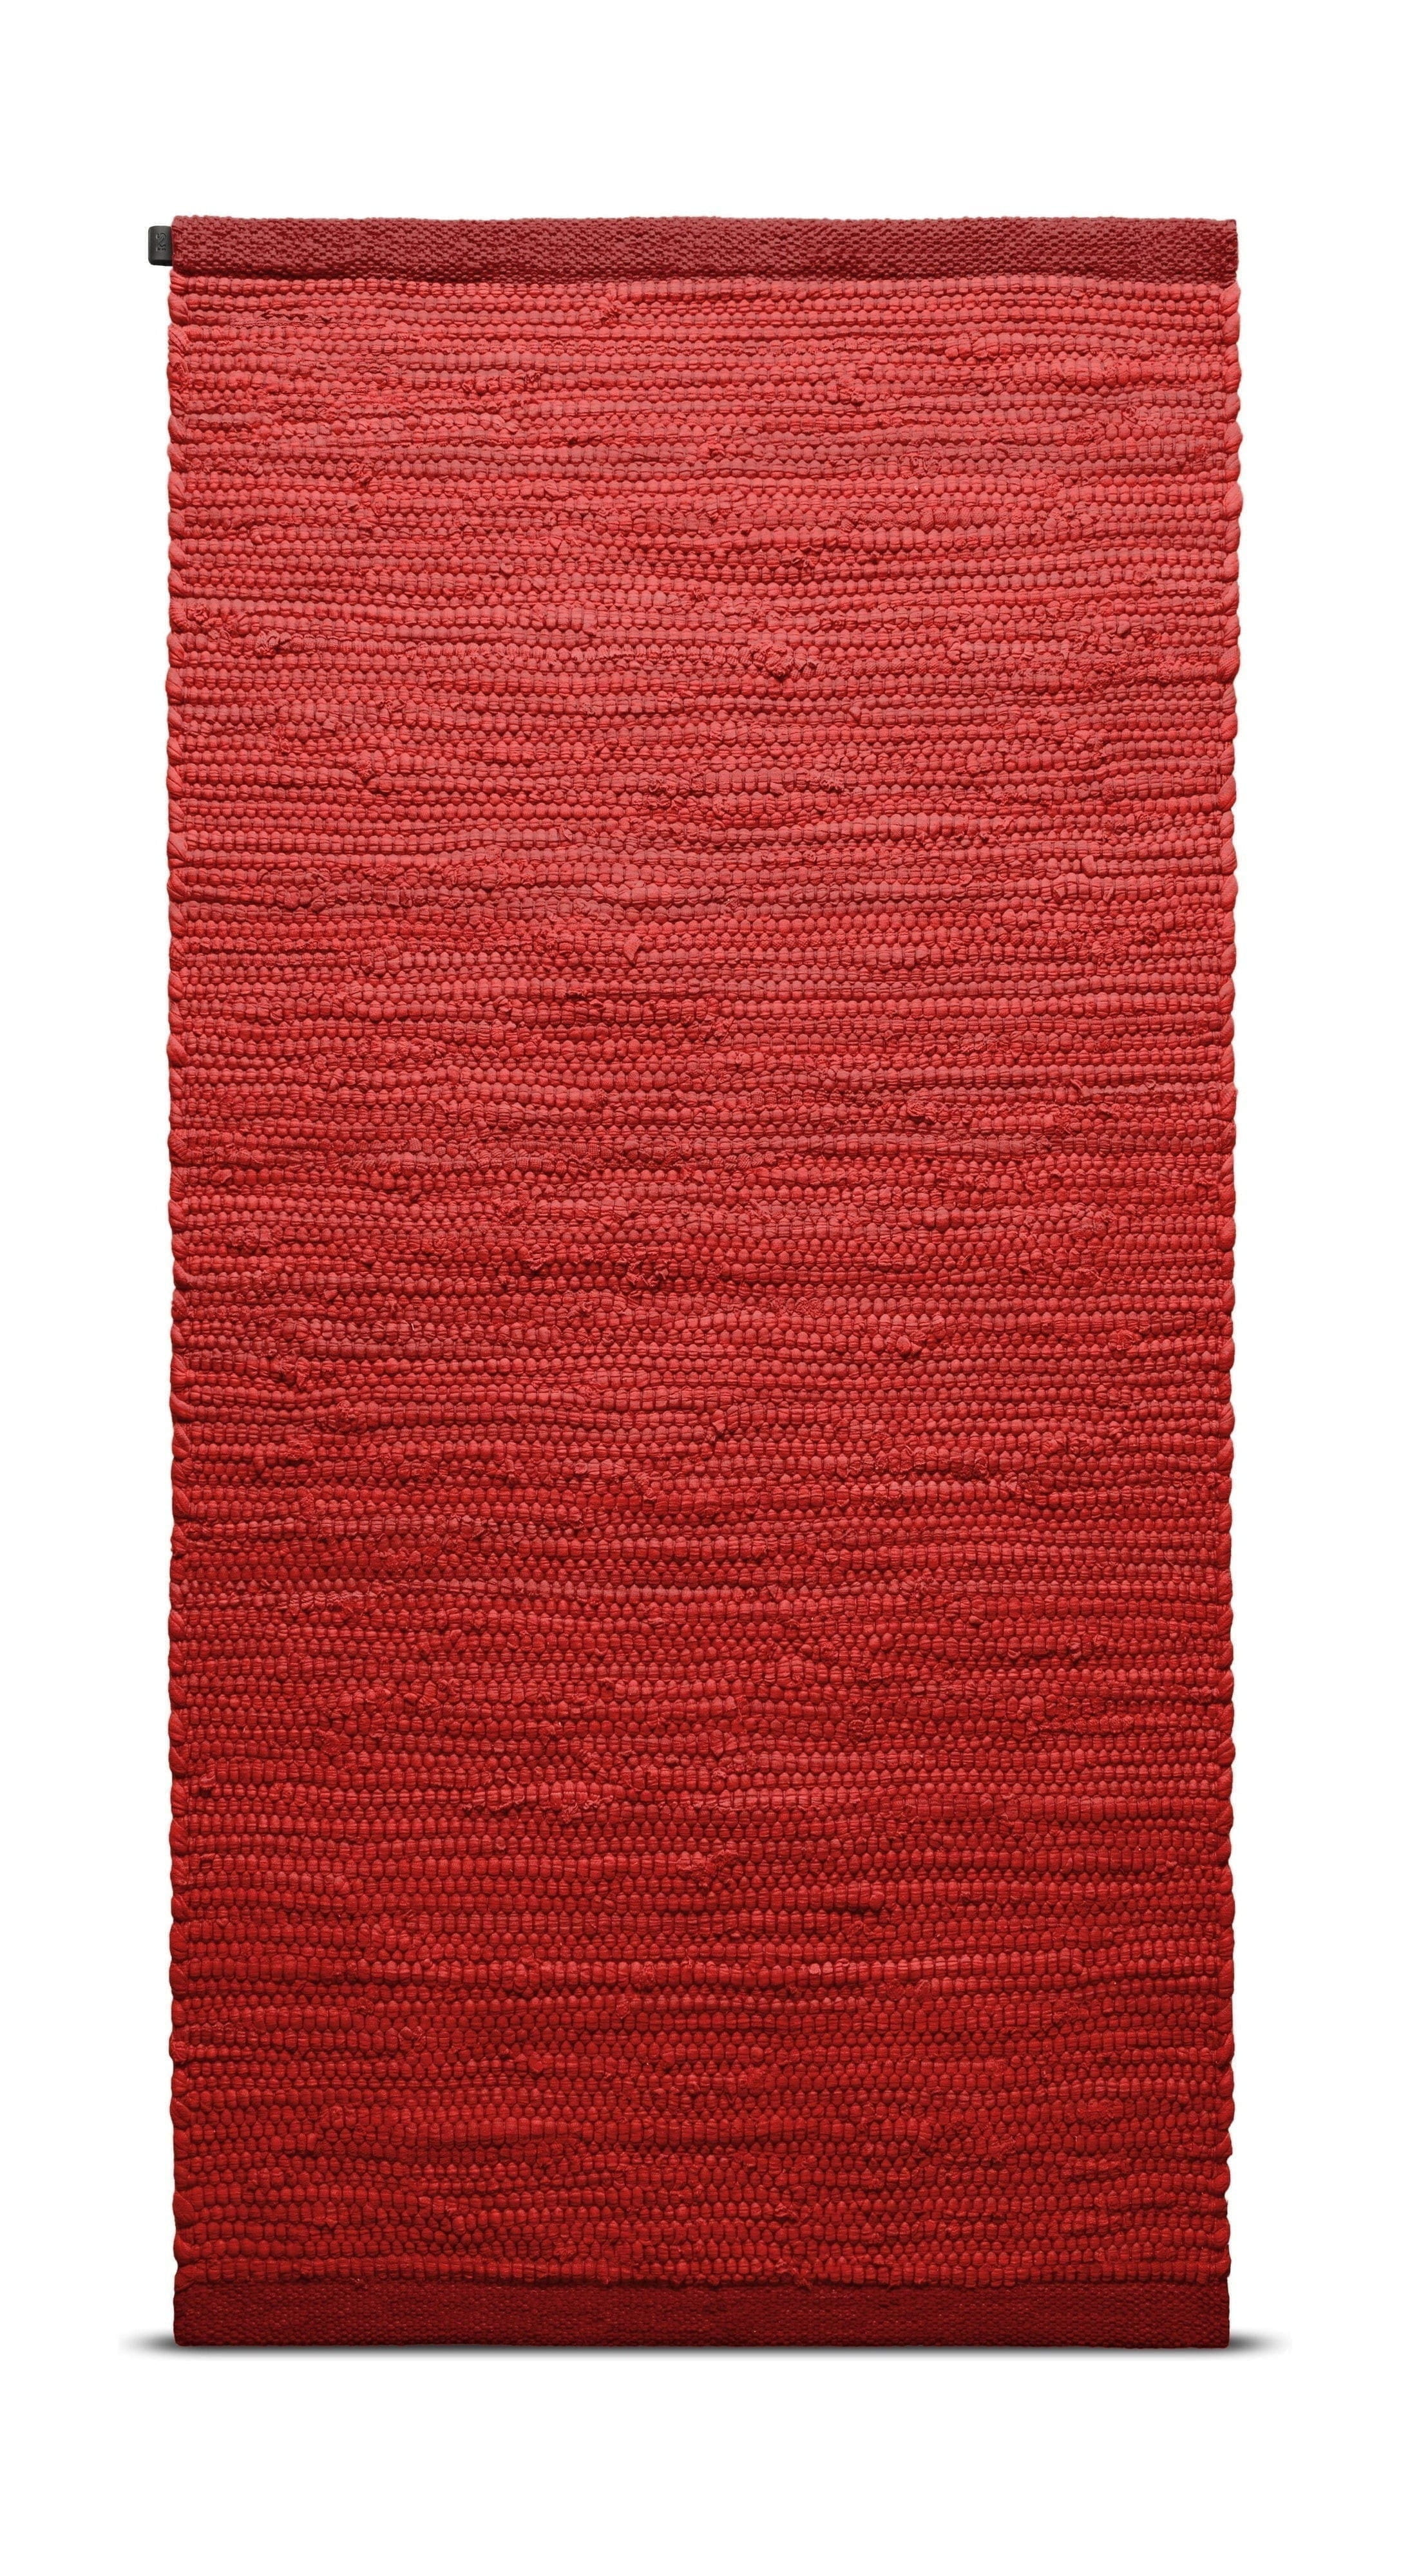 Rug Solid Katoenen tapijt 140 x 200 cm, aardbei